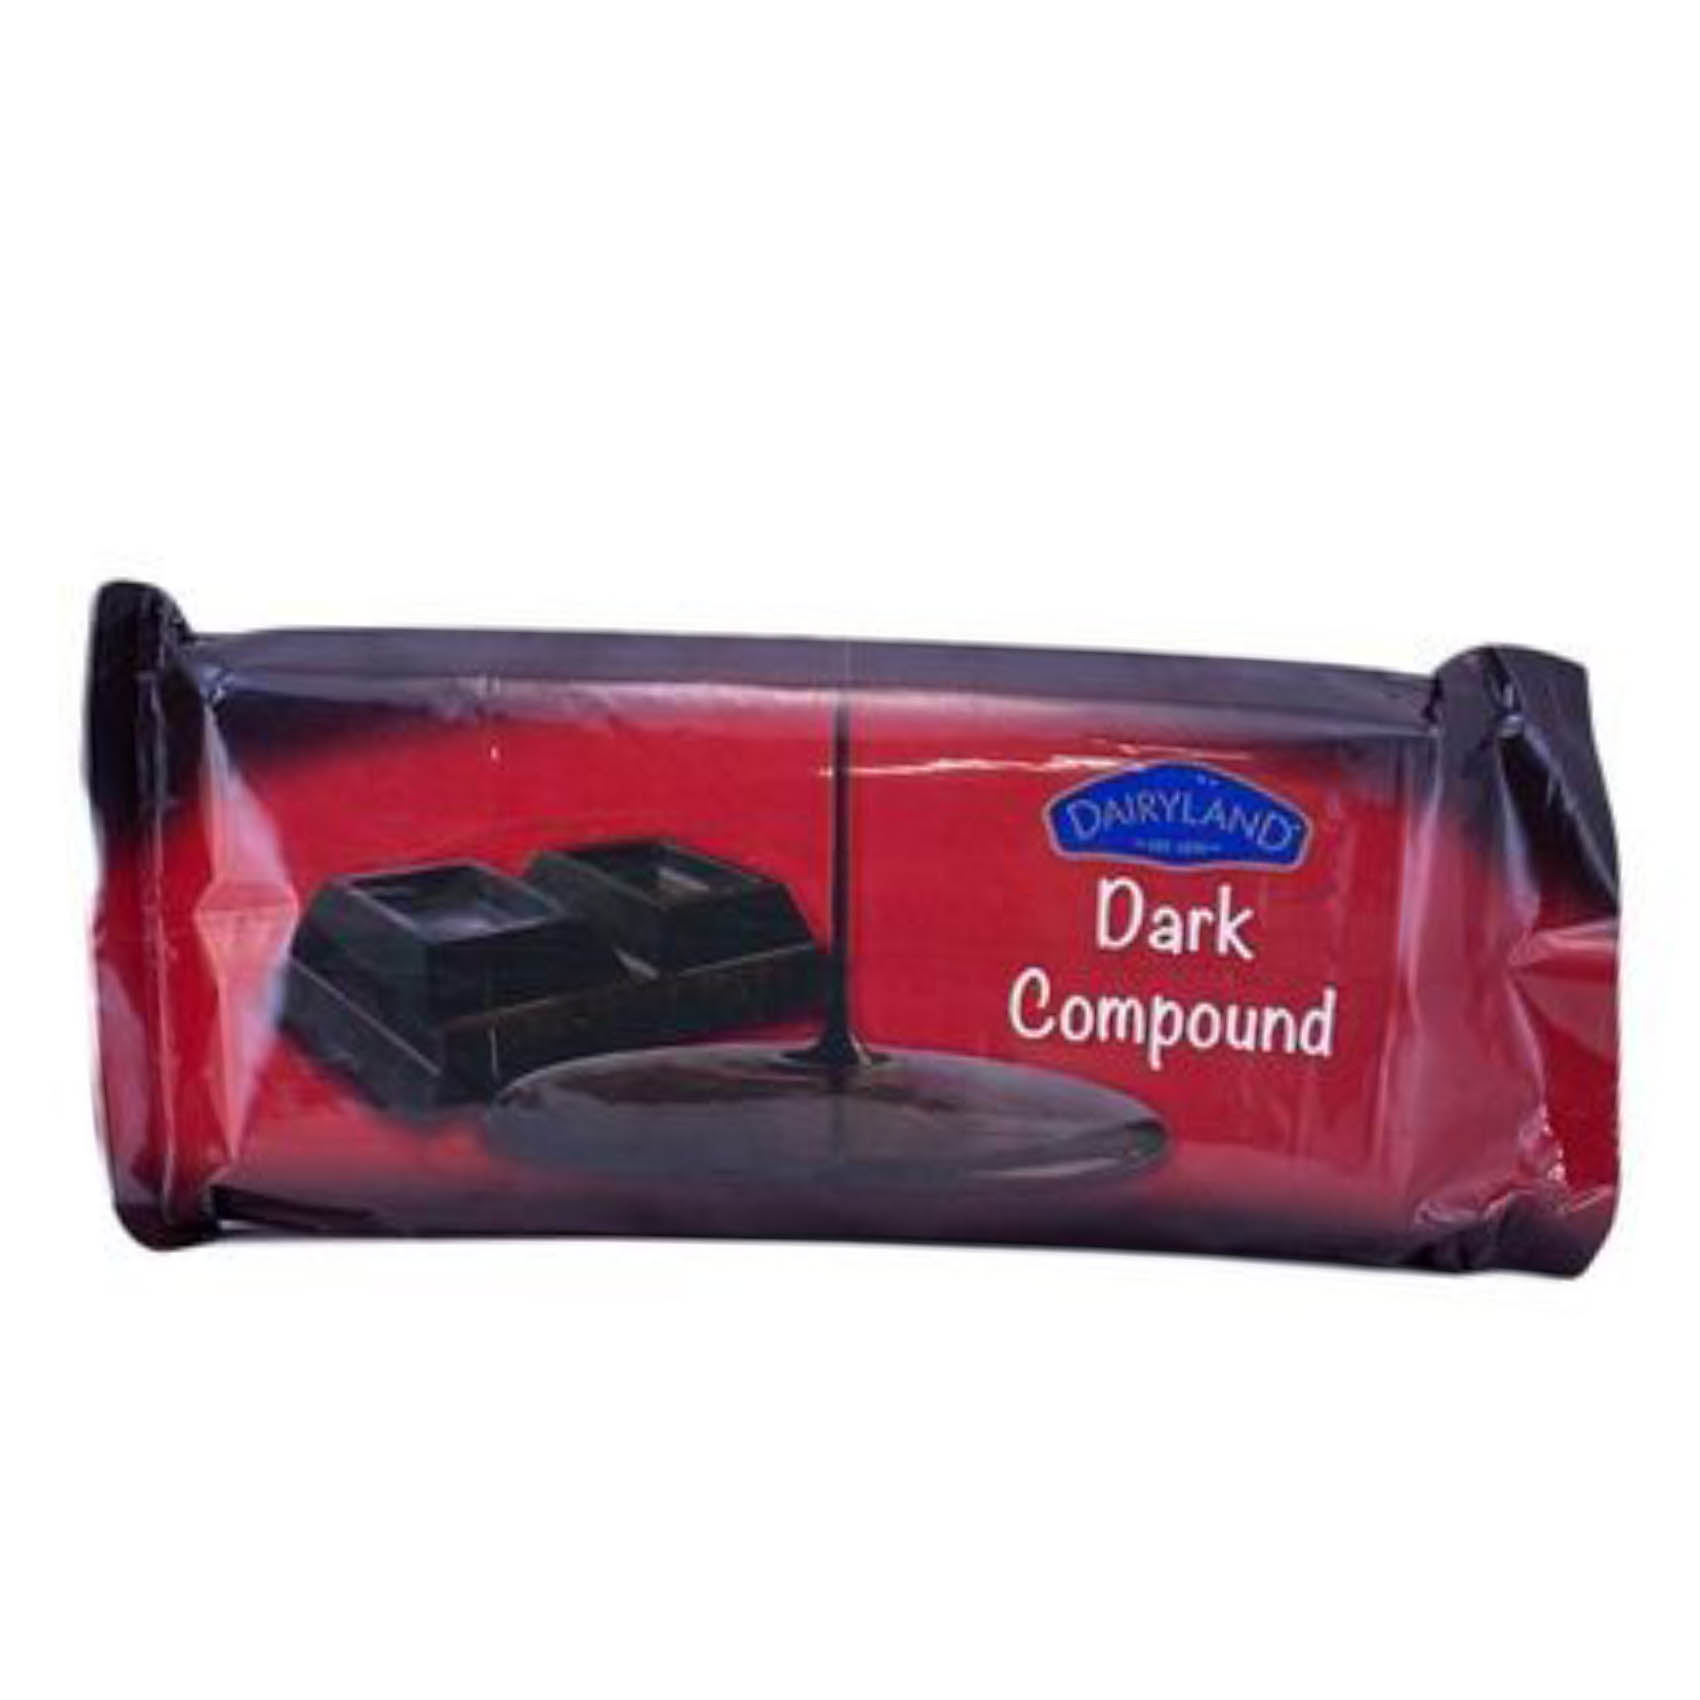 Dairyland Dark Compound Chocolate Bar 500g